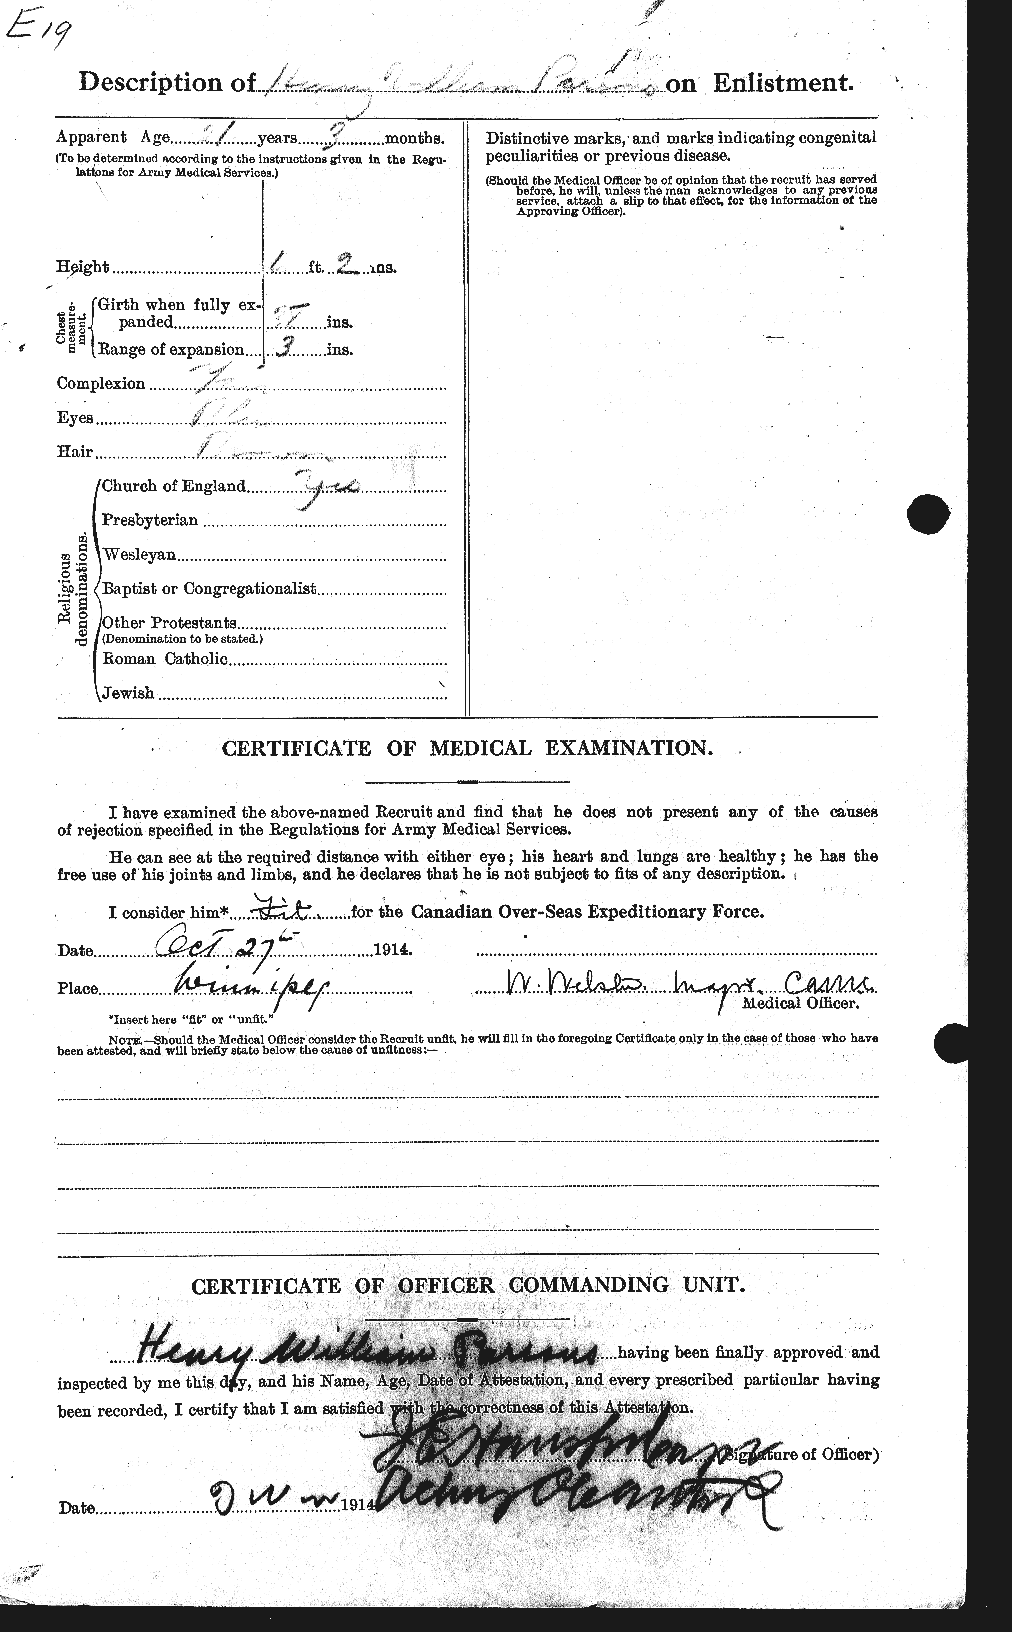 Dossiers du Personnel de la Première Guerre mondiale - CEC 566892b